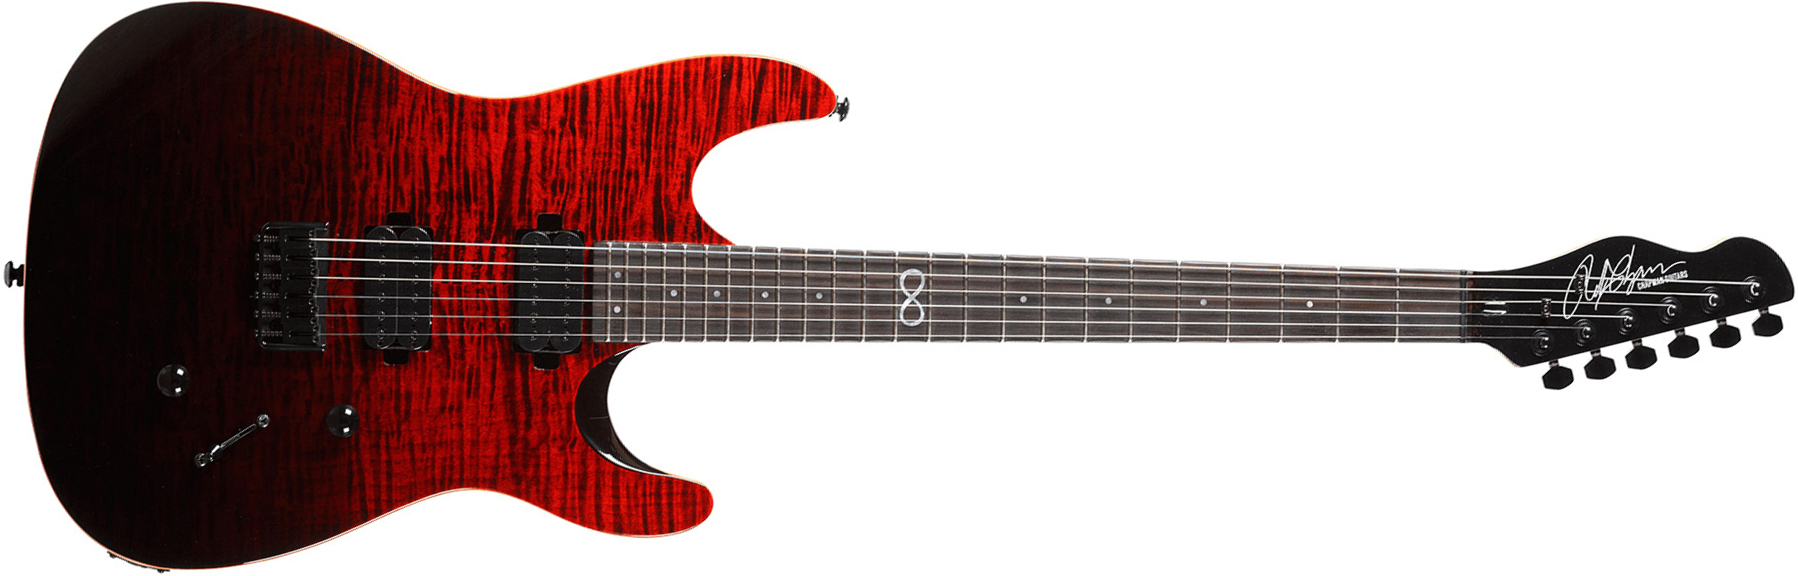 Chapman Guitars Ml1 Modern Standard V2 Hh Ht Eb - Black Blood - Guitarra eléctrica de doble corte. - Main picture